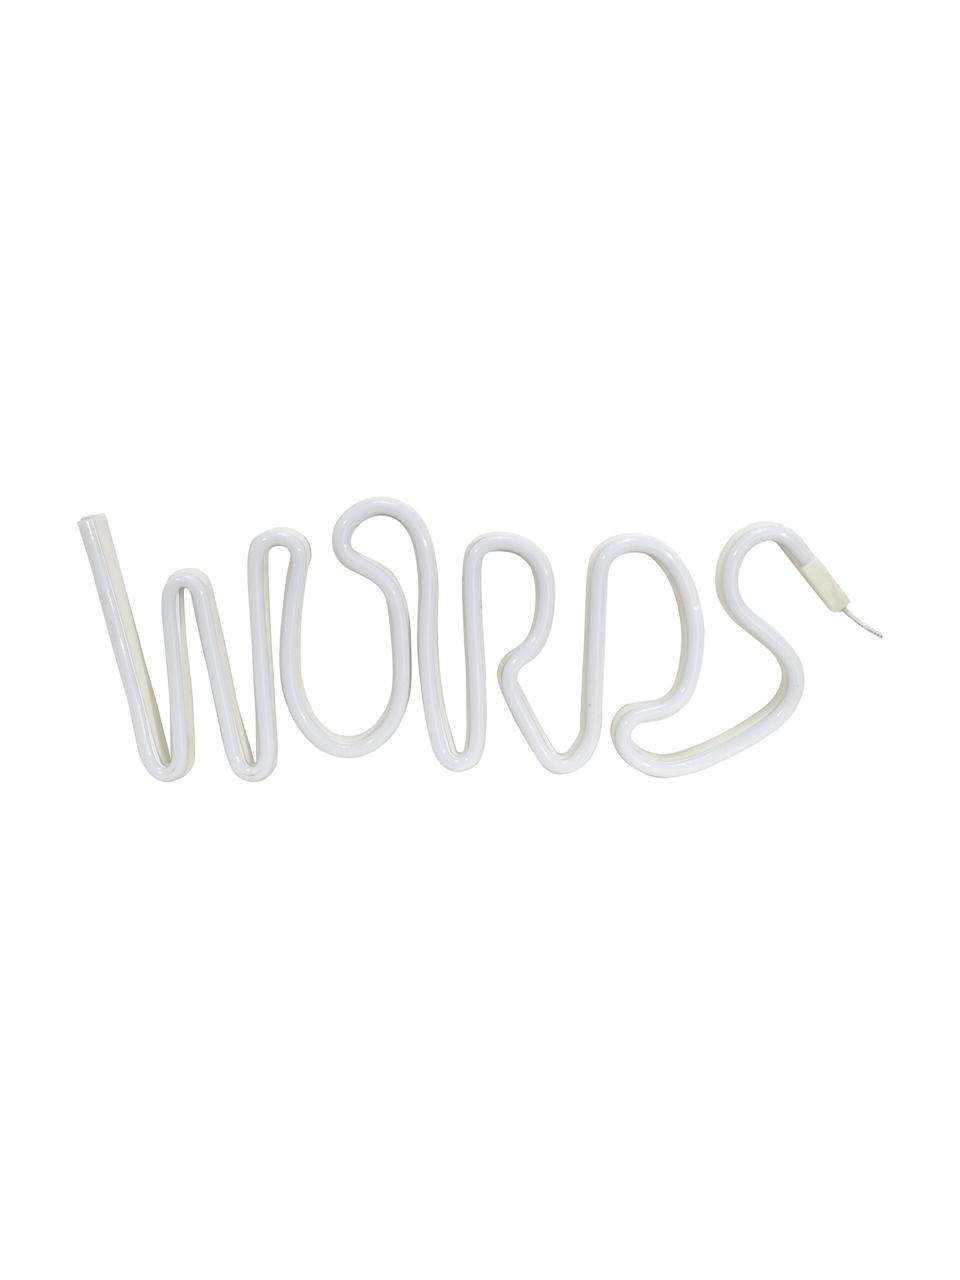 LED-Leuchtobjekt Words, Kunststoff, Weiss, 40 x 19 cm